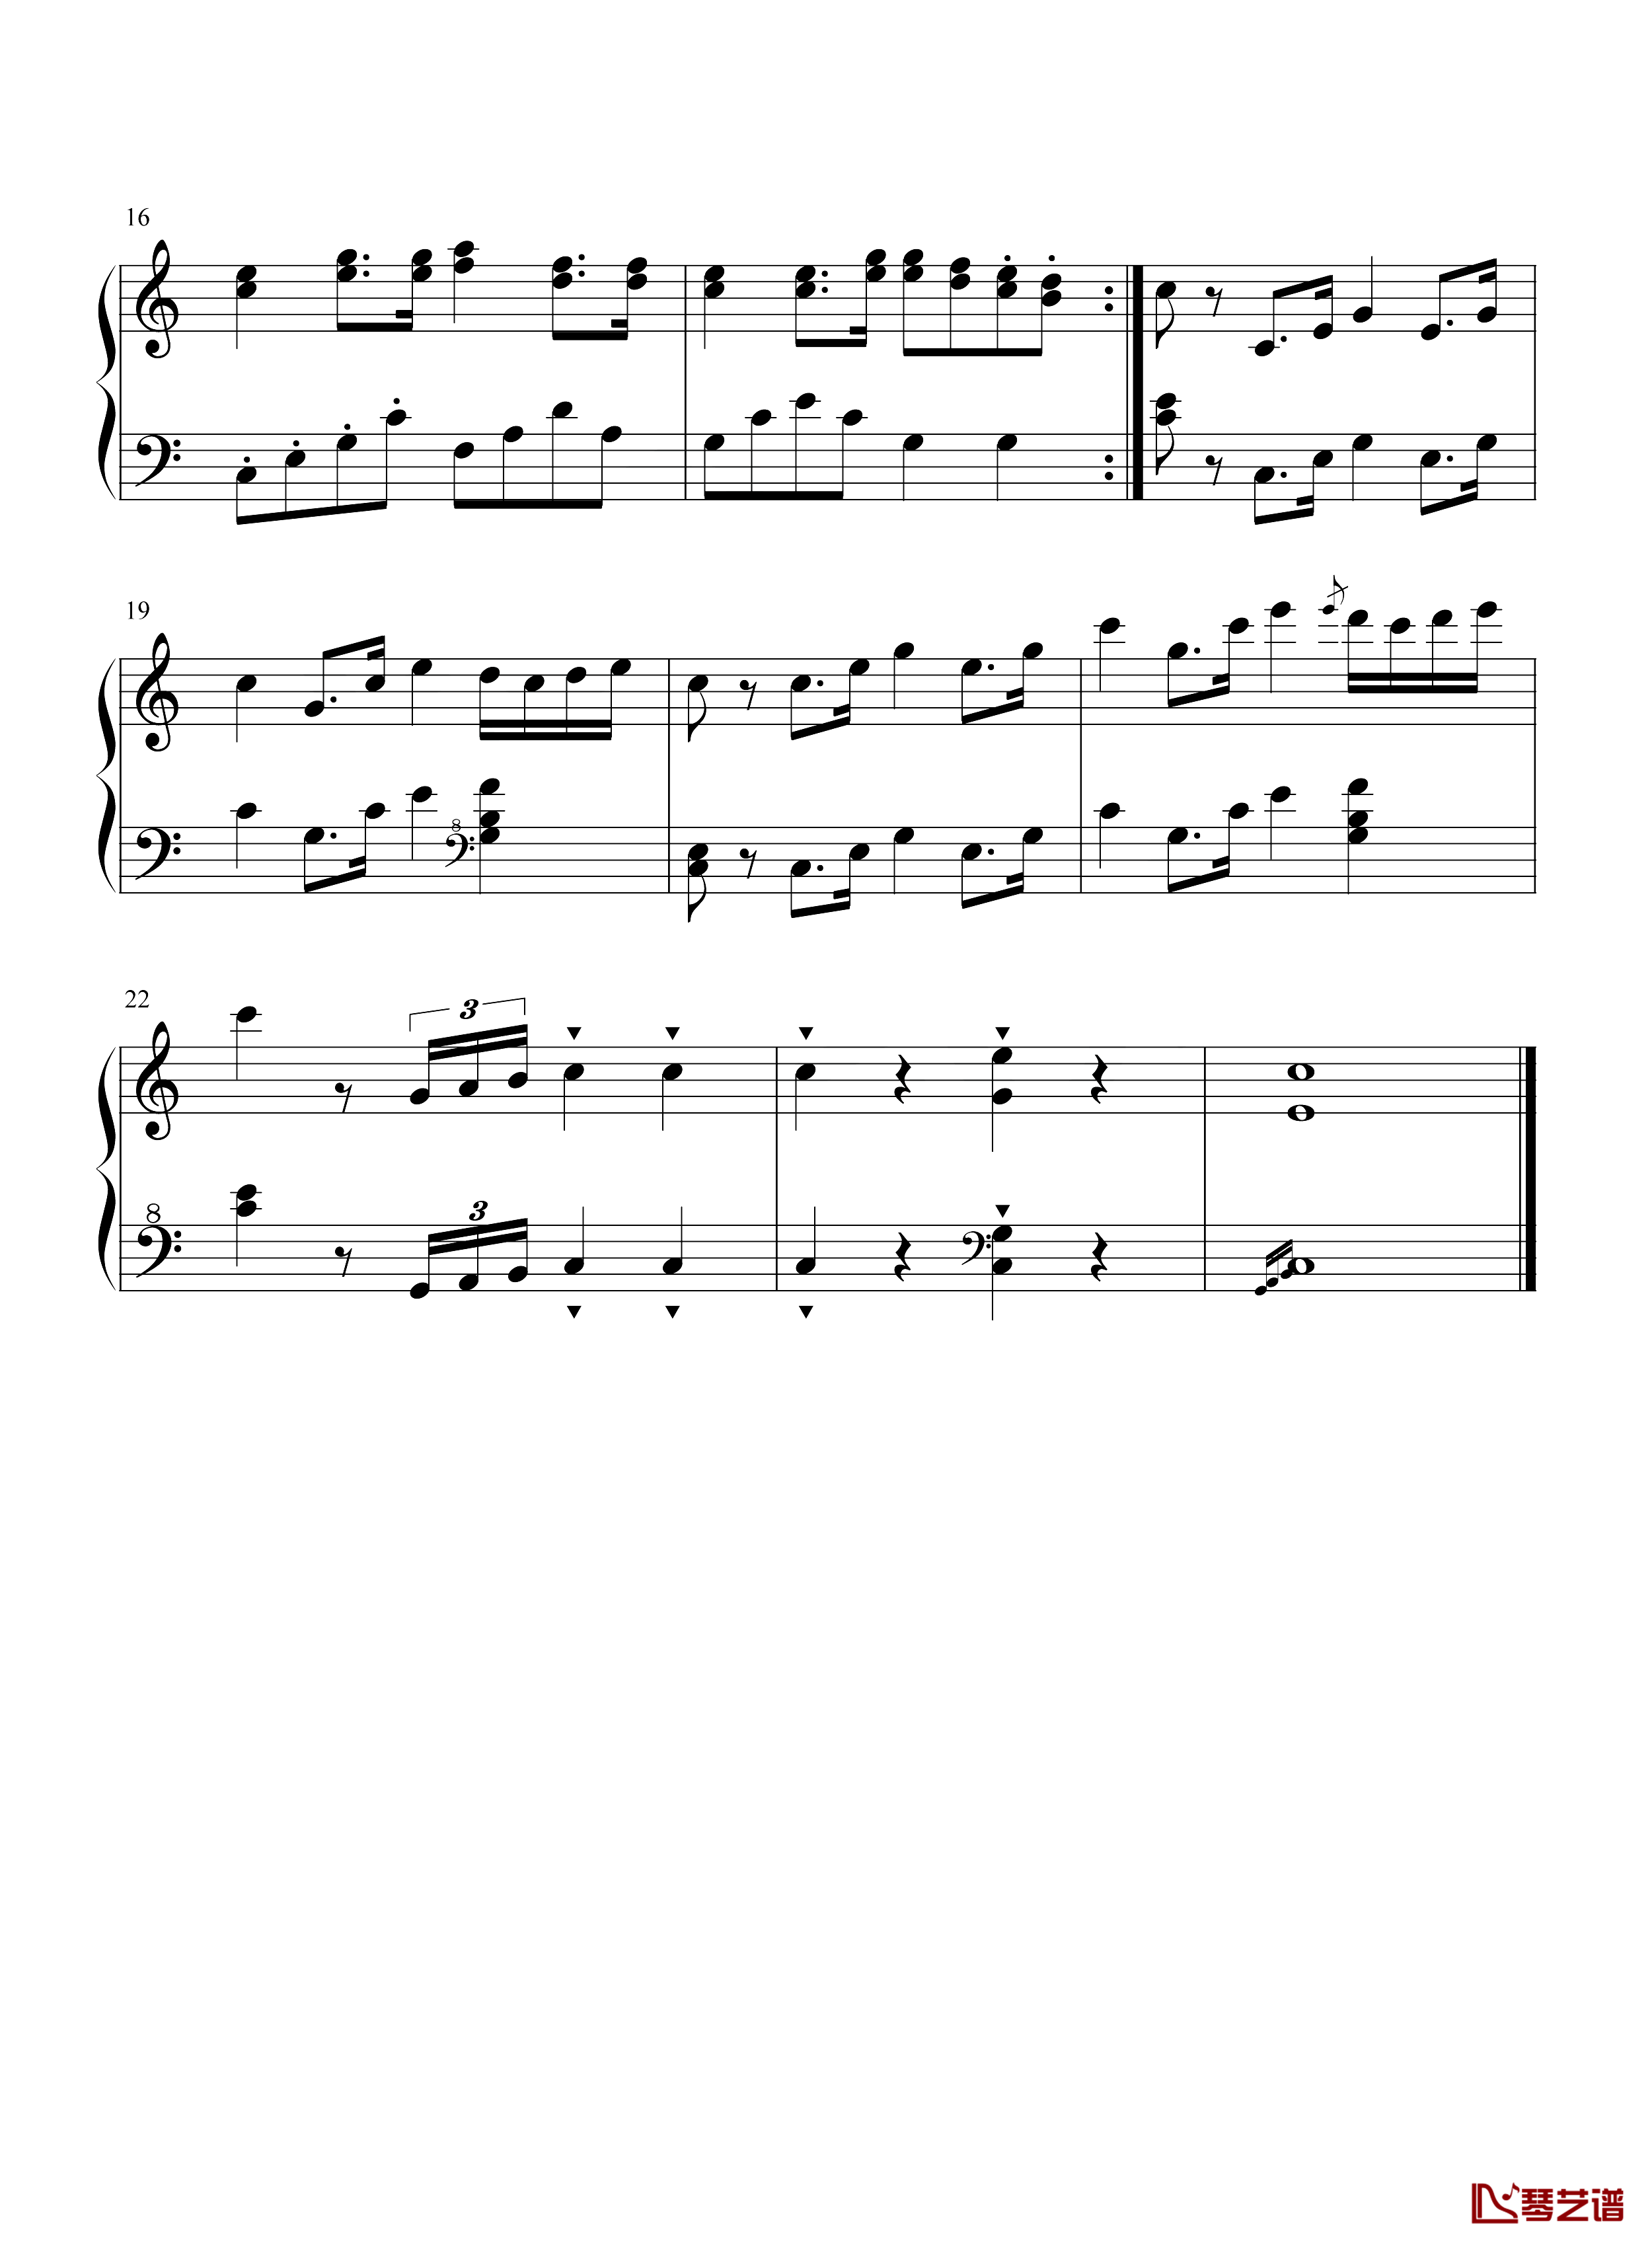 咏叹调钢琴谱-莫扎特-简单的曲子适合新手练习2